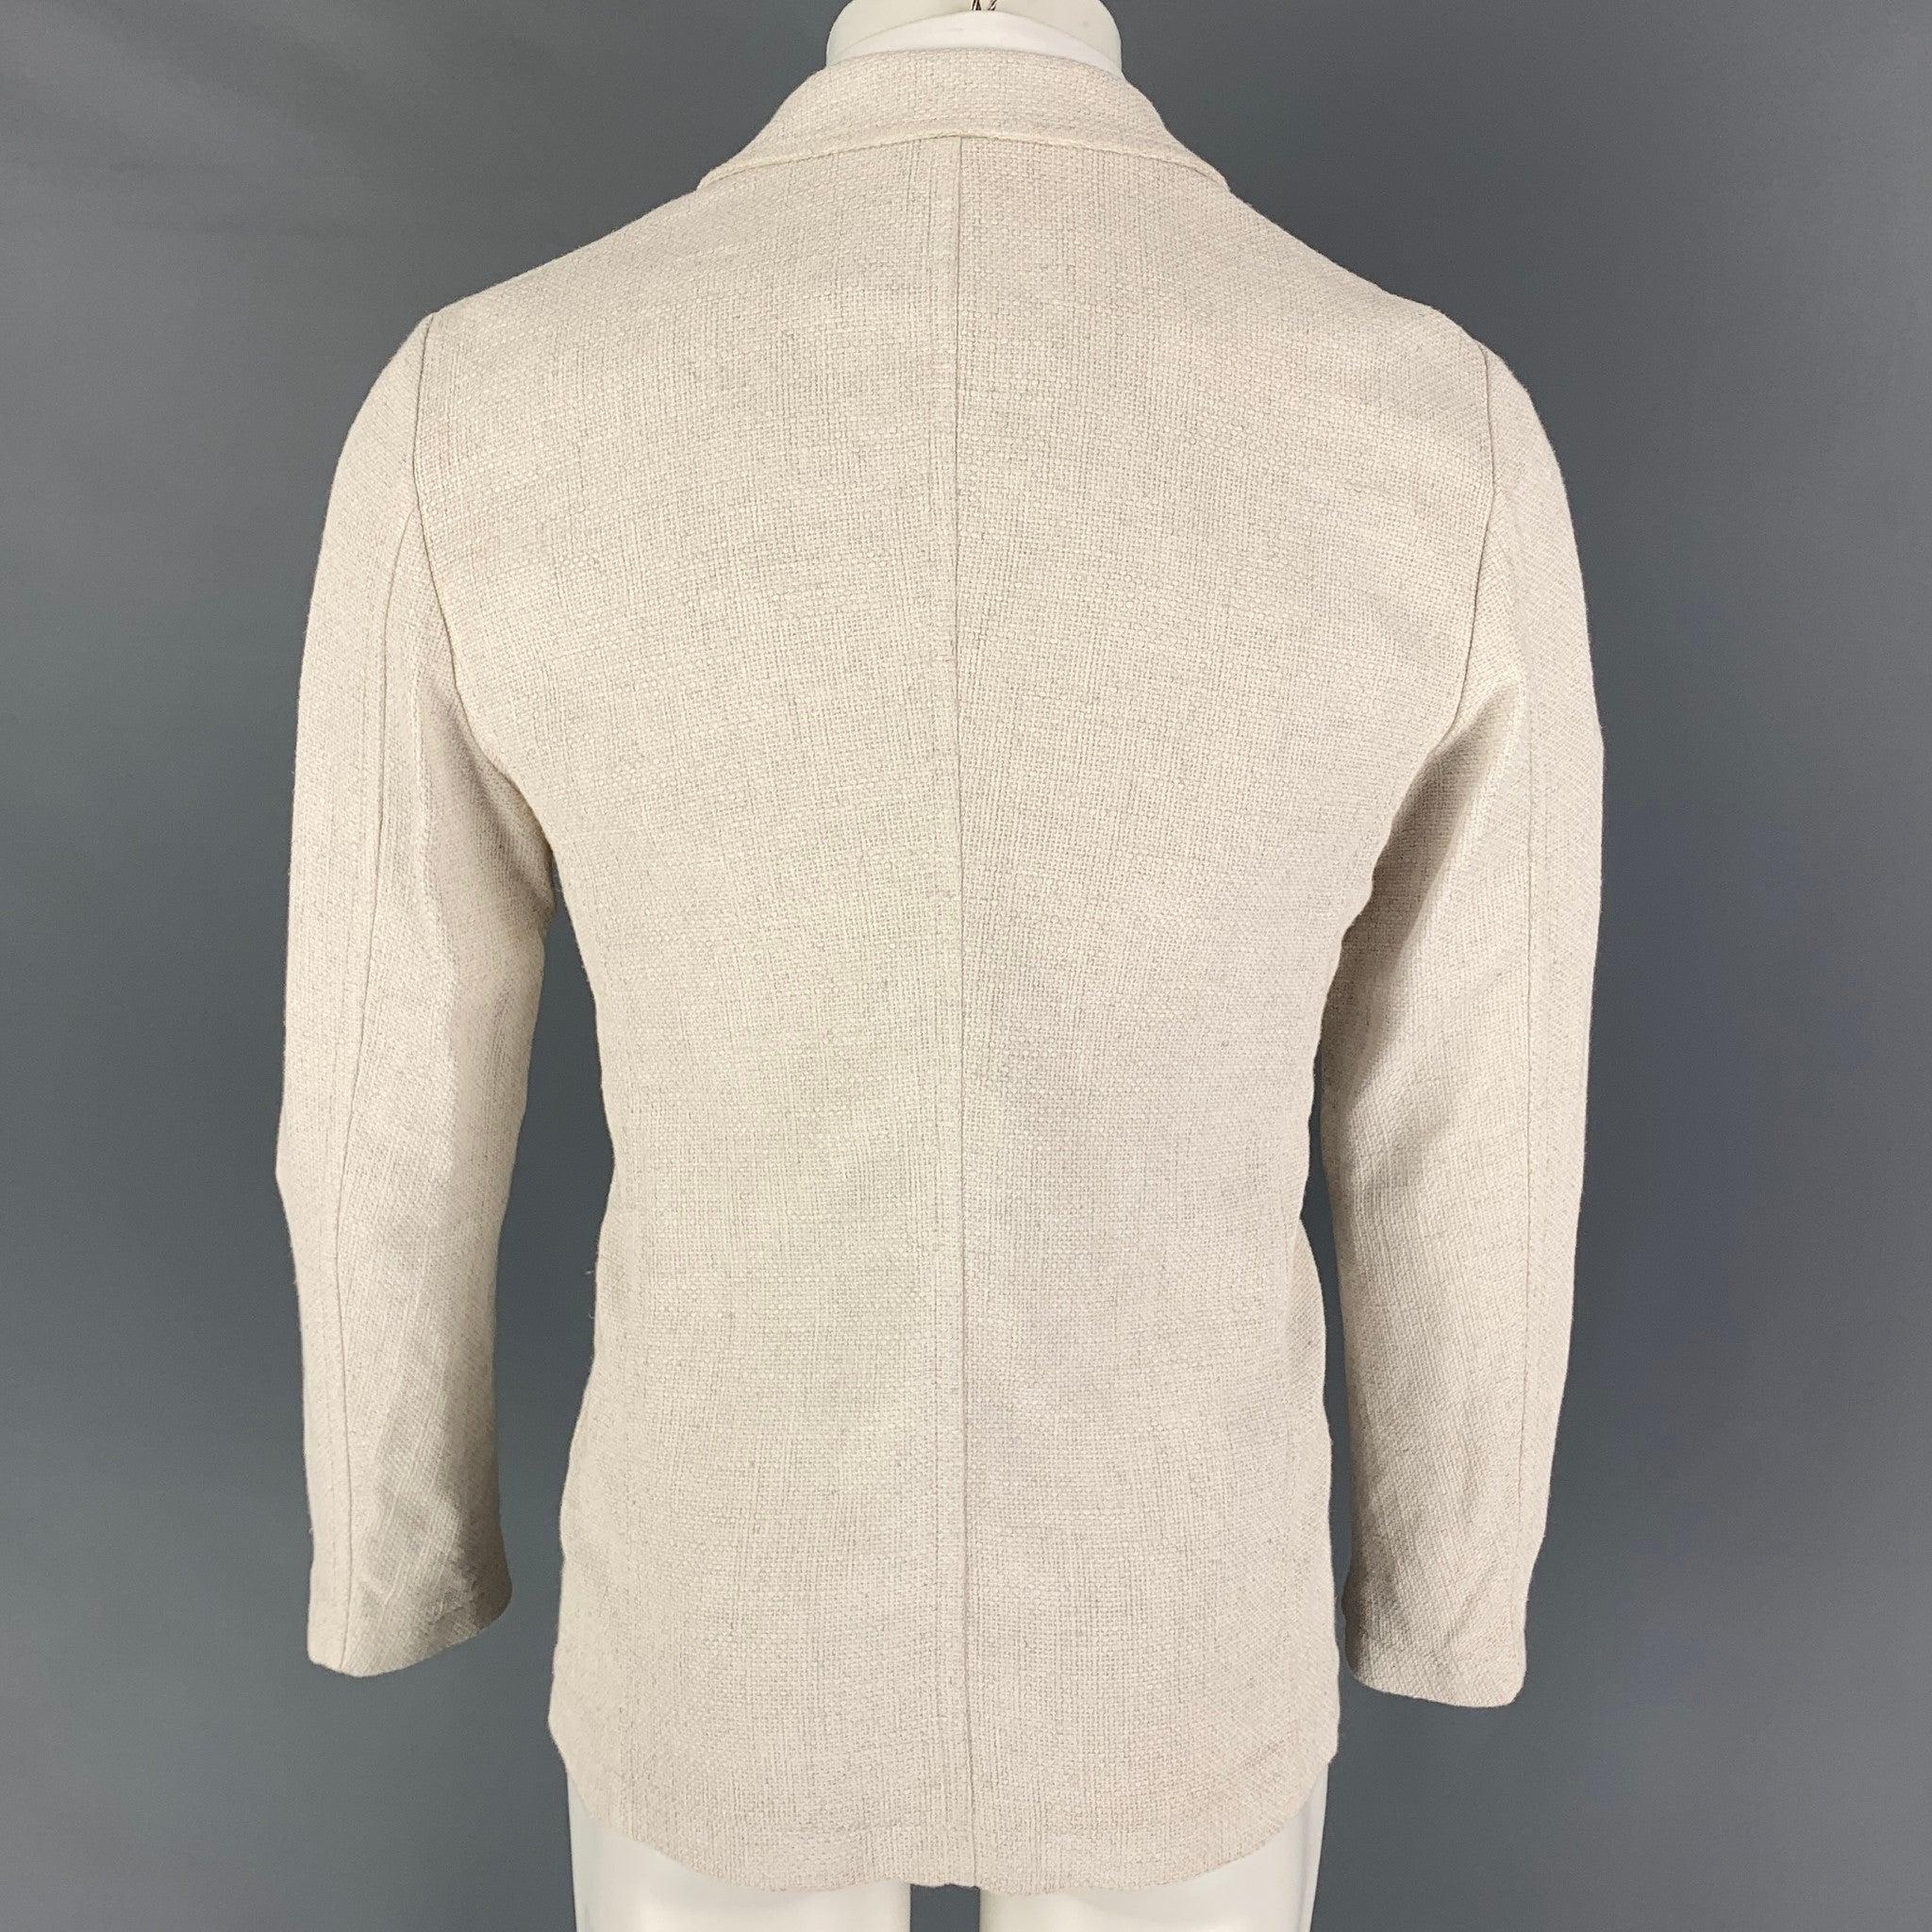 GIORGIO ARMANI Size 36 Off White Woven Viscose Blend Sport Coat In Good Condition For Sale In San Francisco, CA